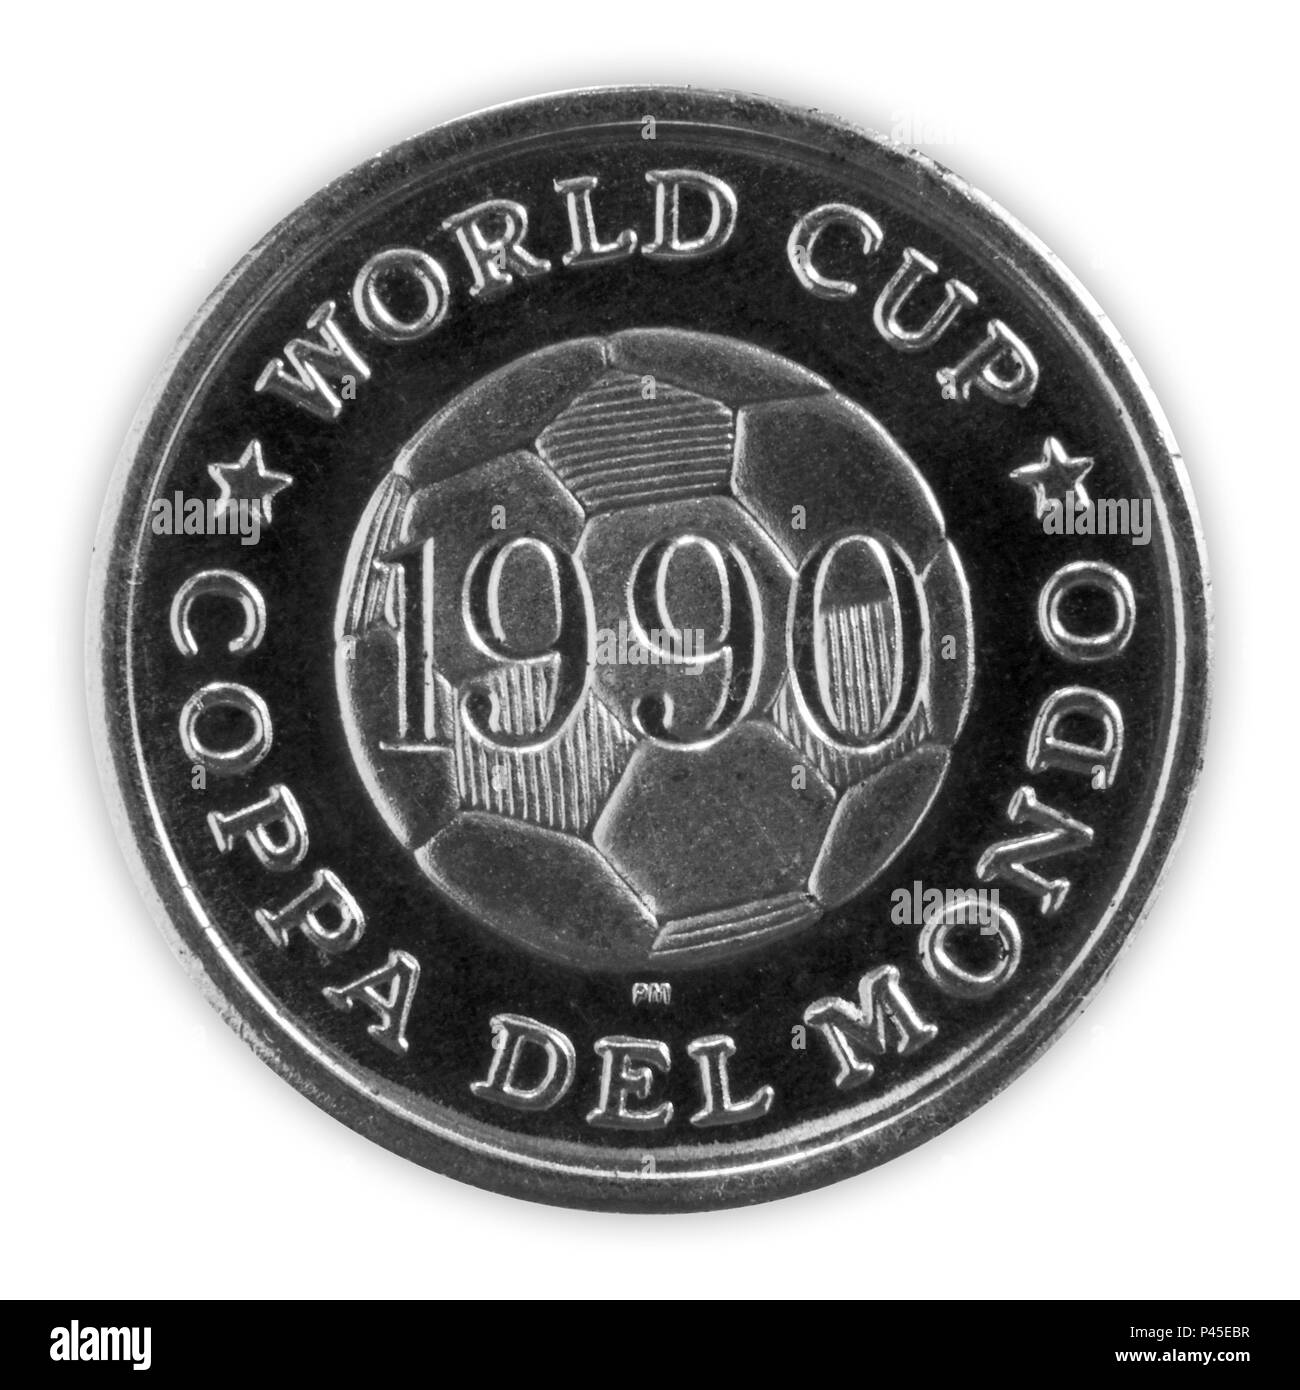 Italia - Giugno 18, 2018: la FIFA World Cup 1990 medaglia commemorativa intitolato World Cup Coppa del Mondo dotato di una immagine di un campo di calcio Foto Stock